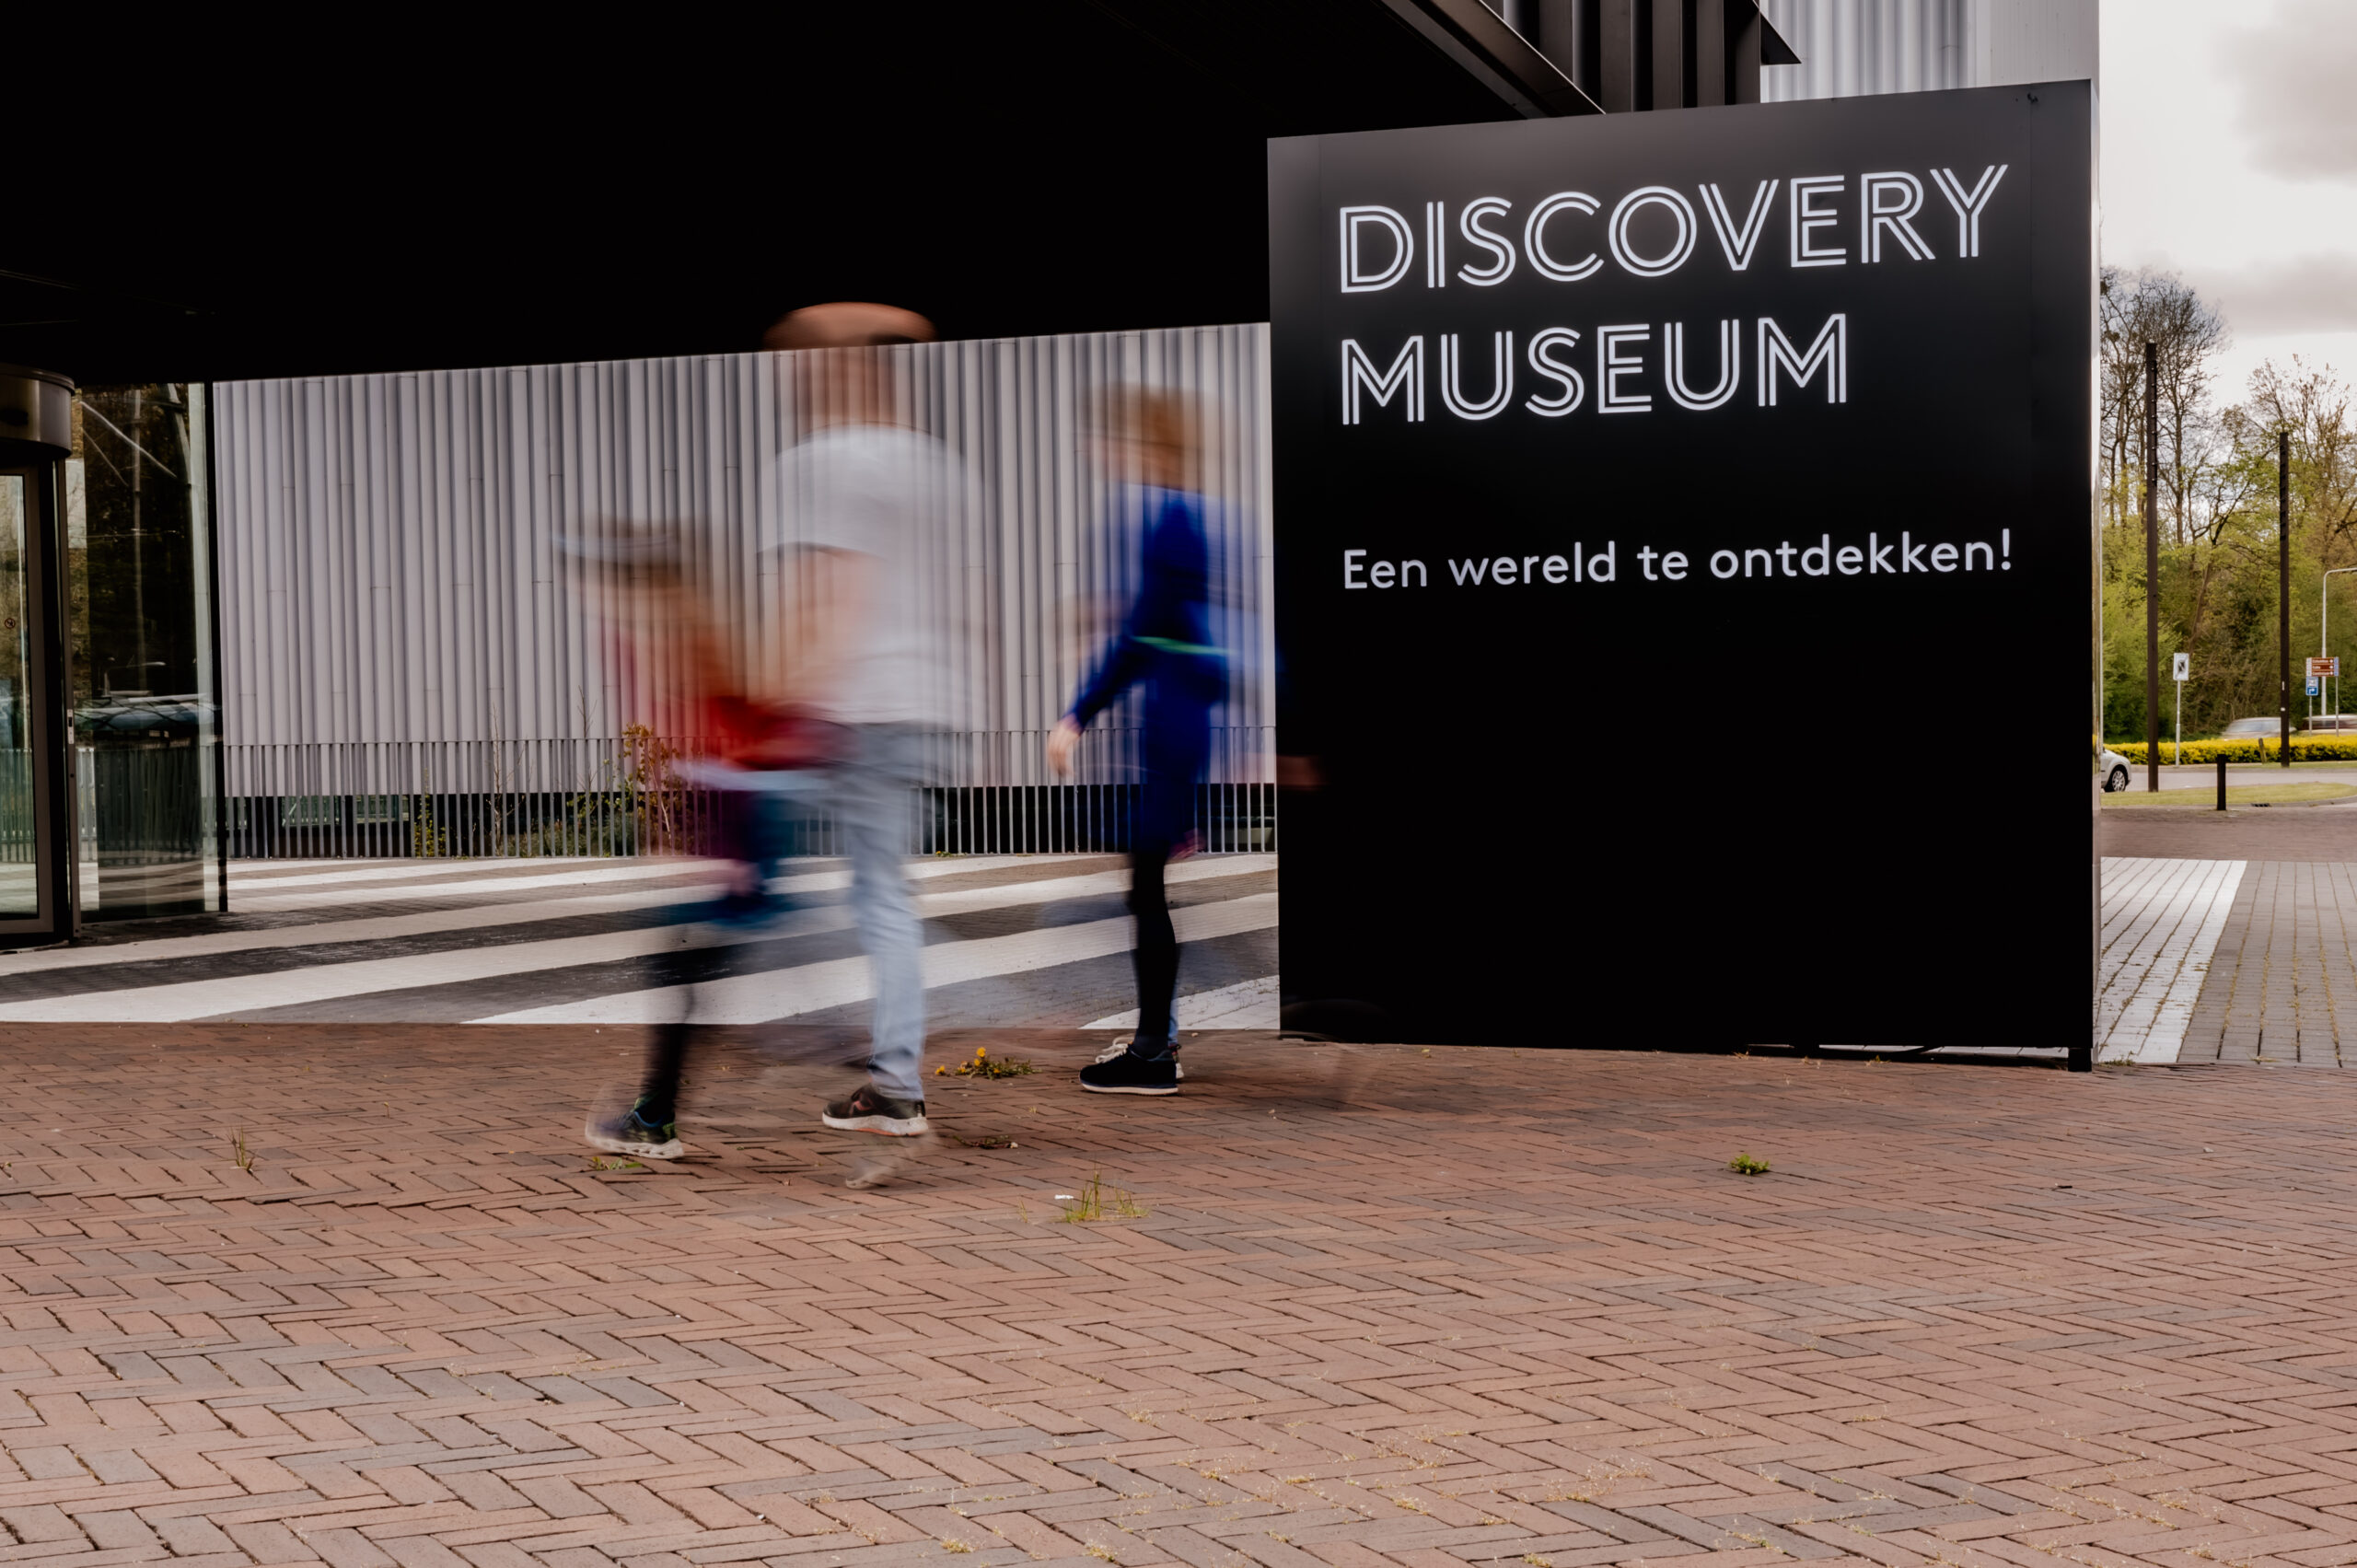 Bordje met daarop 'Discovery Museum, Een wereld te ontdekken!' waar door een lange sluitertijd vervaagd drie mensen voorlangs lopen.